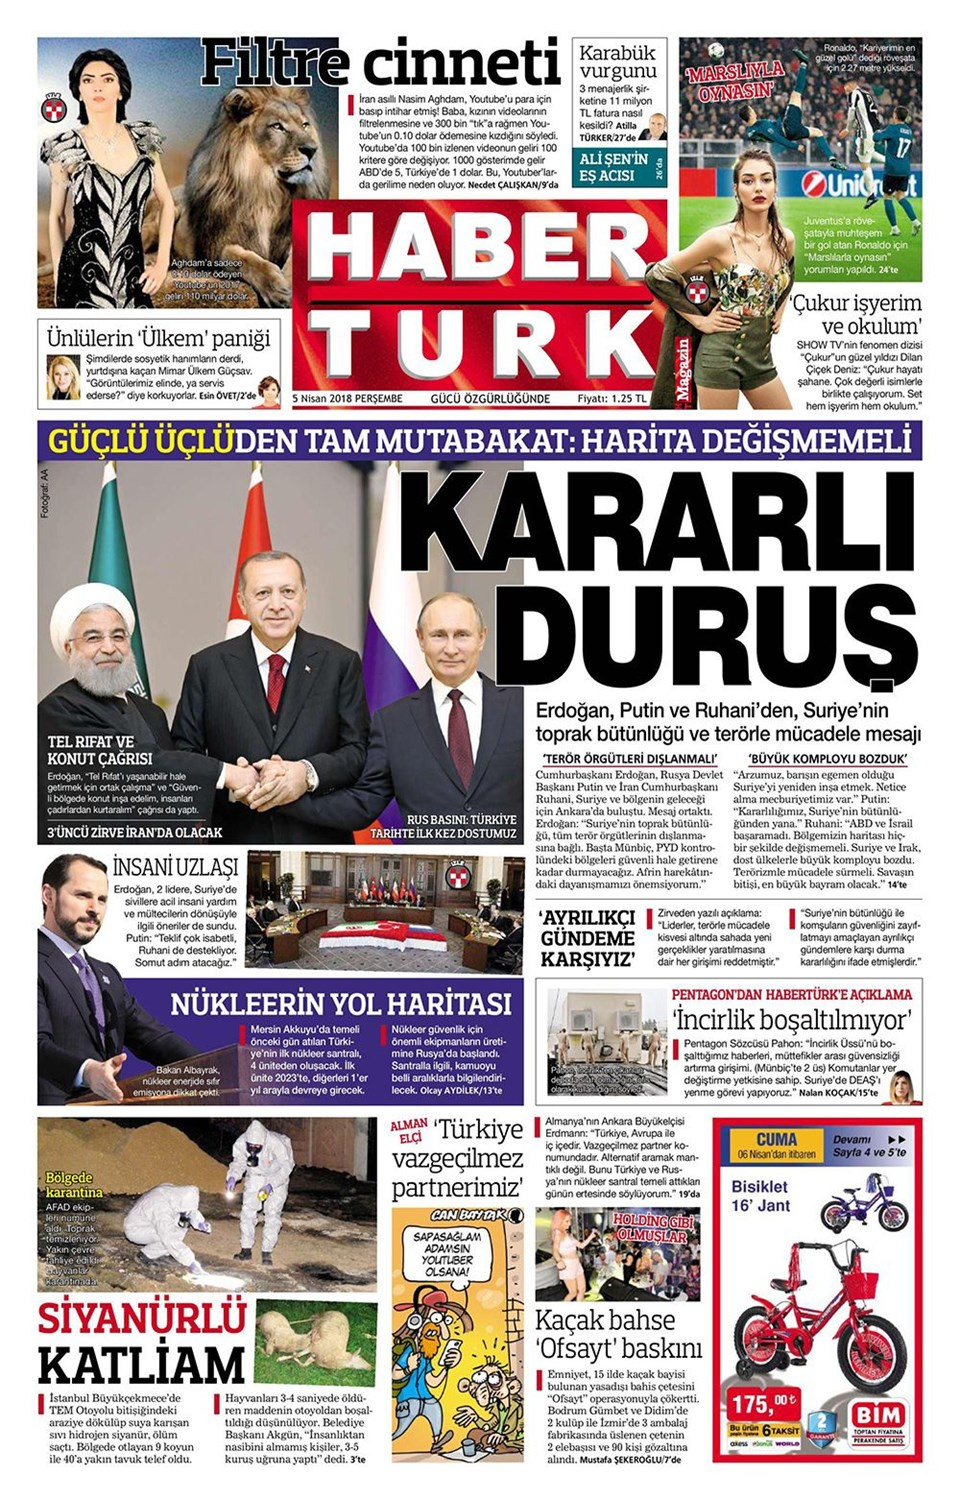 Gazete manşetleri 5 Nisan 2018 Hürriyet - Sözcü - Posta